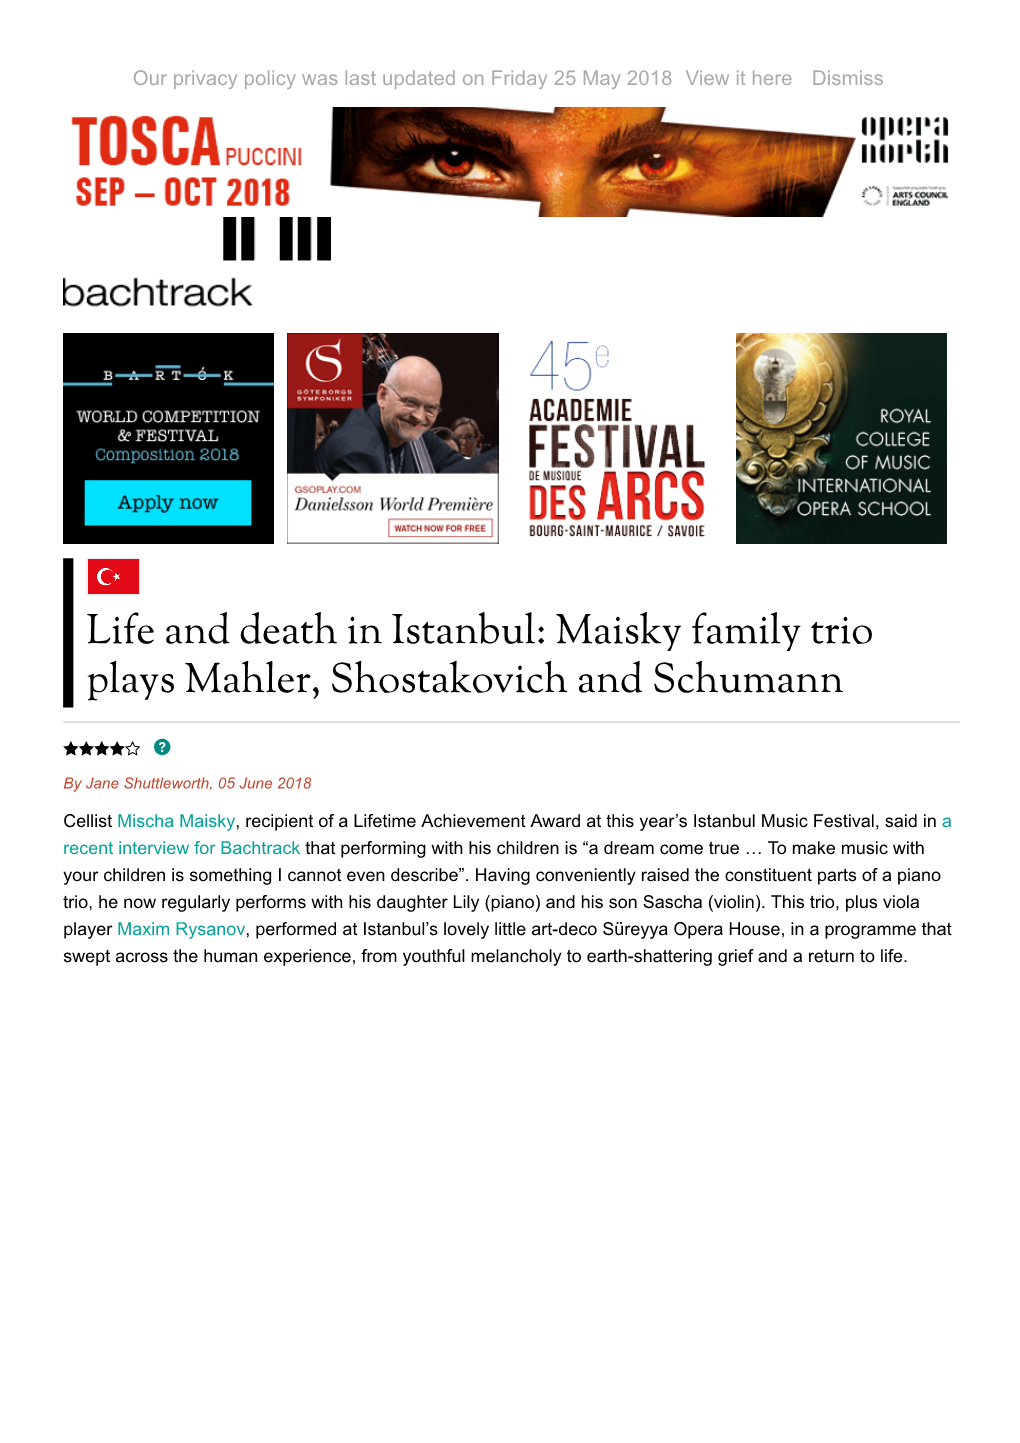 Maisky Family Trio Plays Mahler, Shostakovich and Schumann